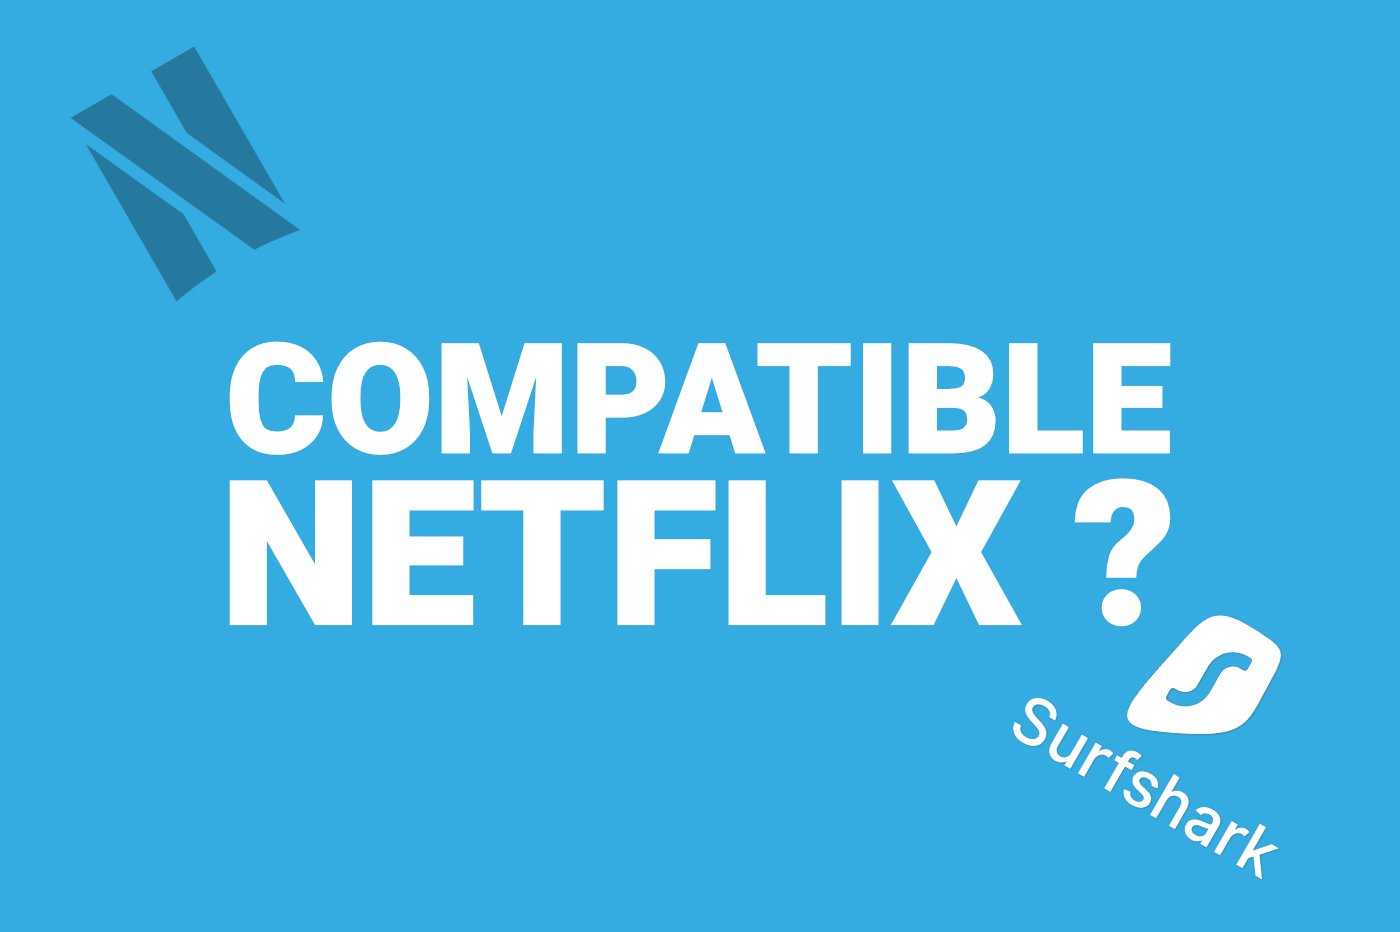 Surfshark compatible Netflix